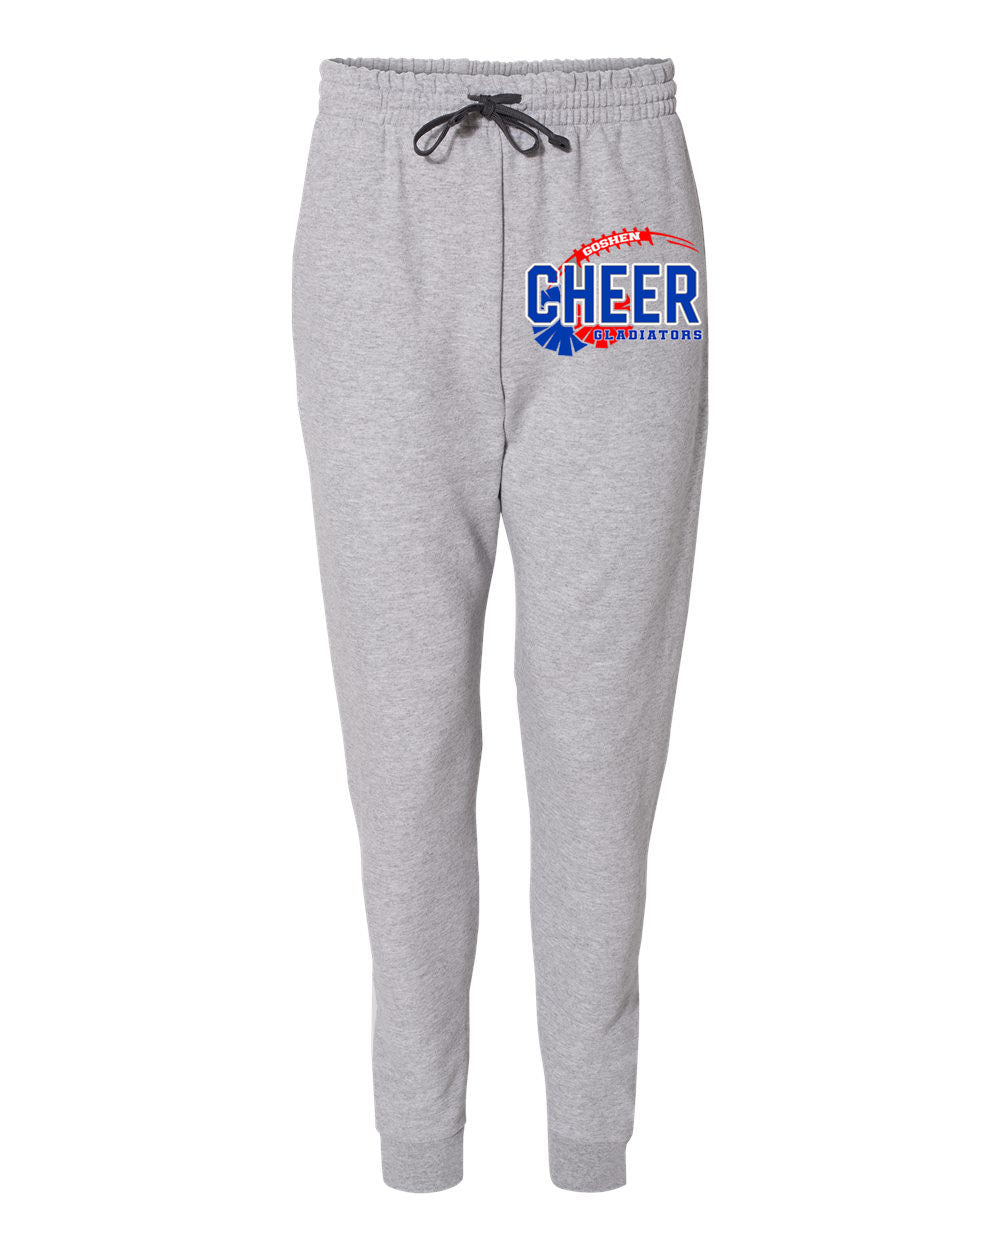 Goshen Cheer Design 6 Sweatpants